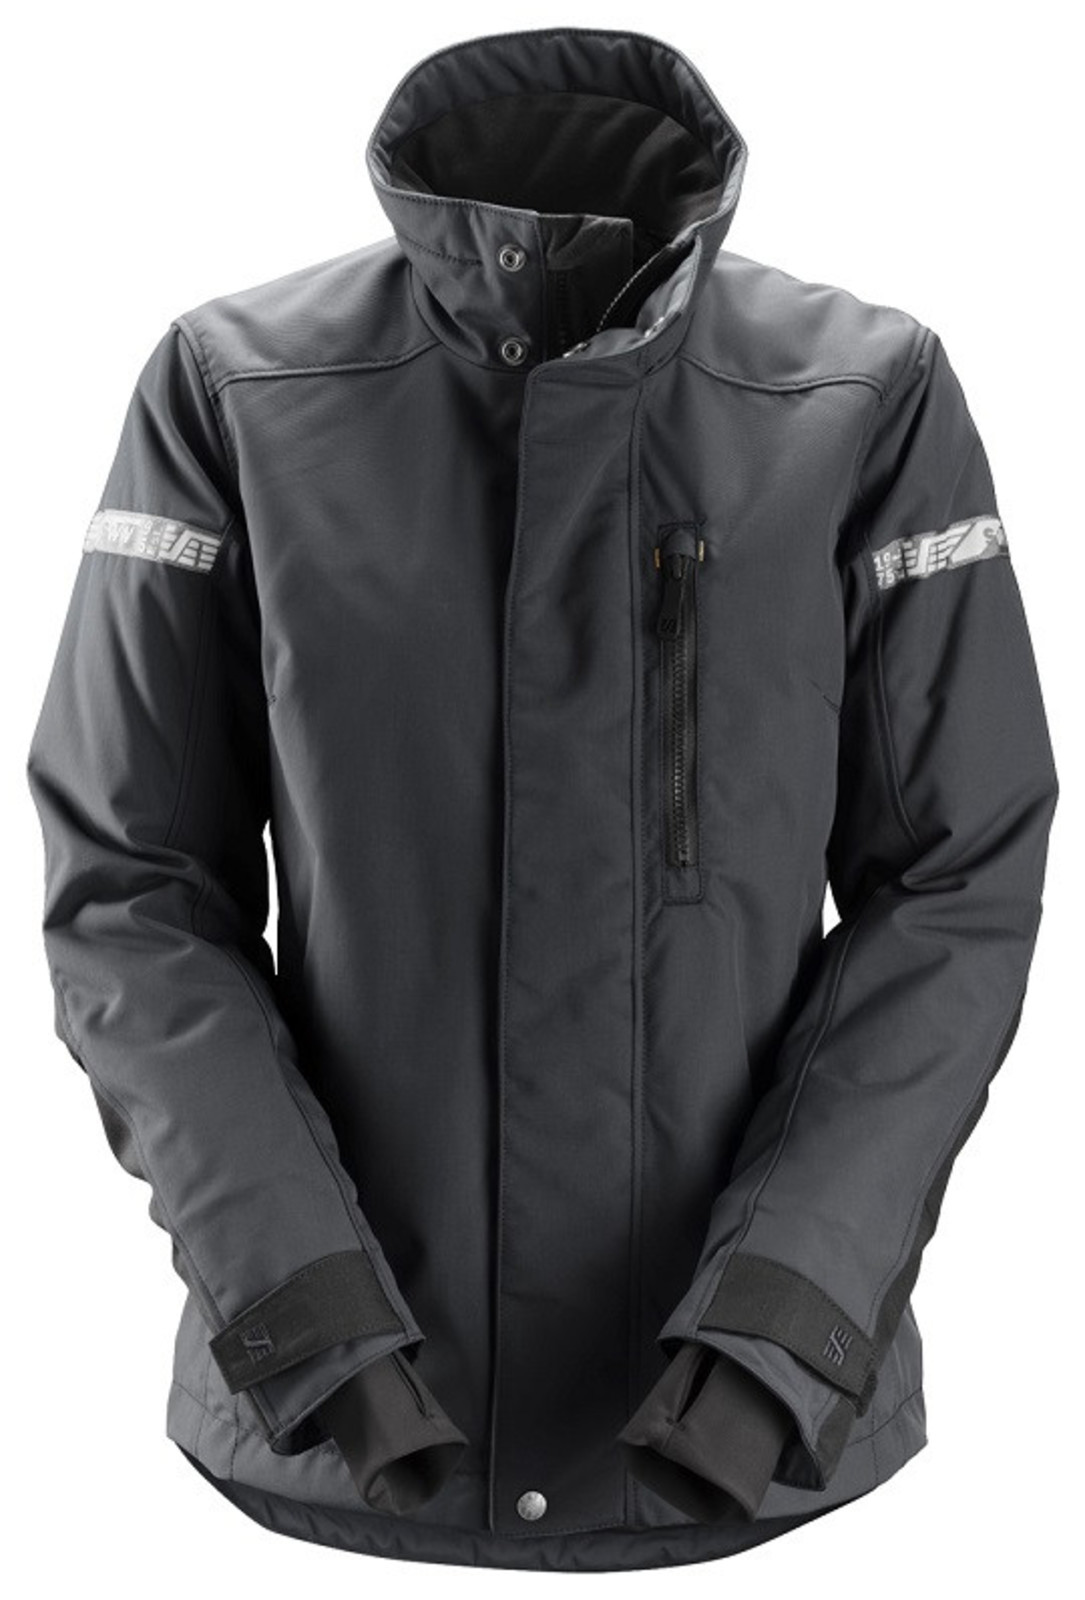 Dámska zimná bunda Snickers® AllroundWork 37.5® - veľkosť: XL, farba: oceľovo sivá